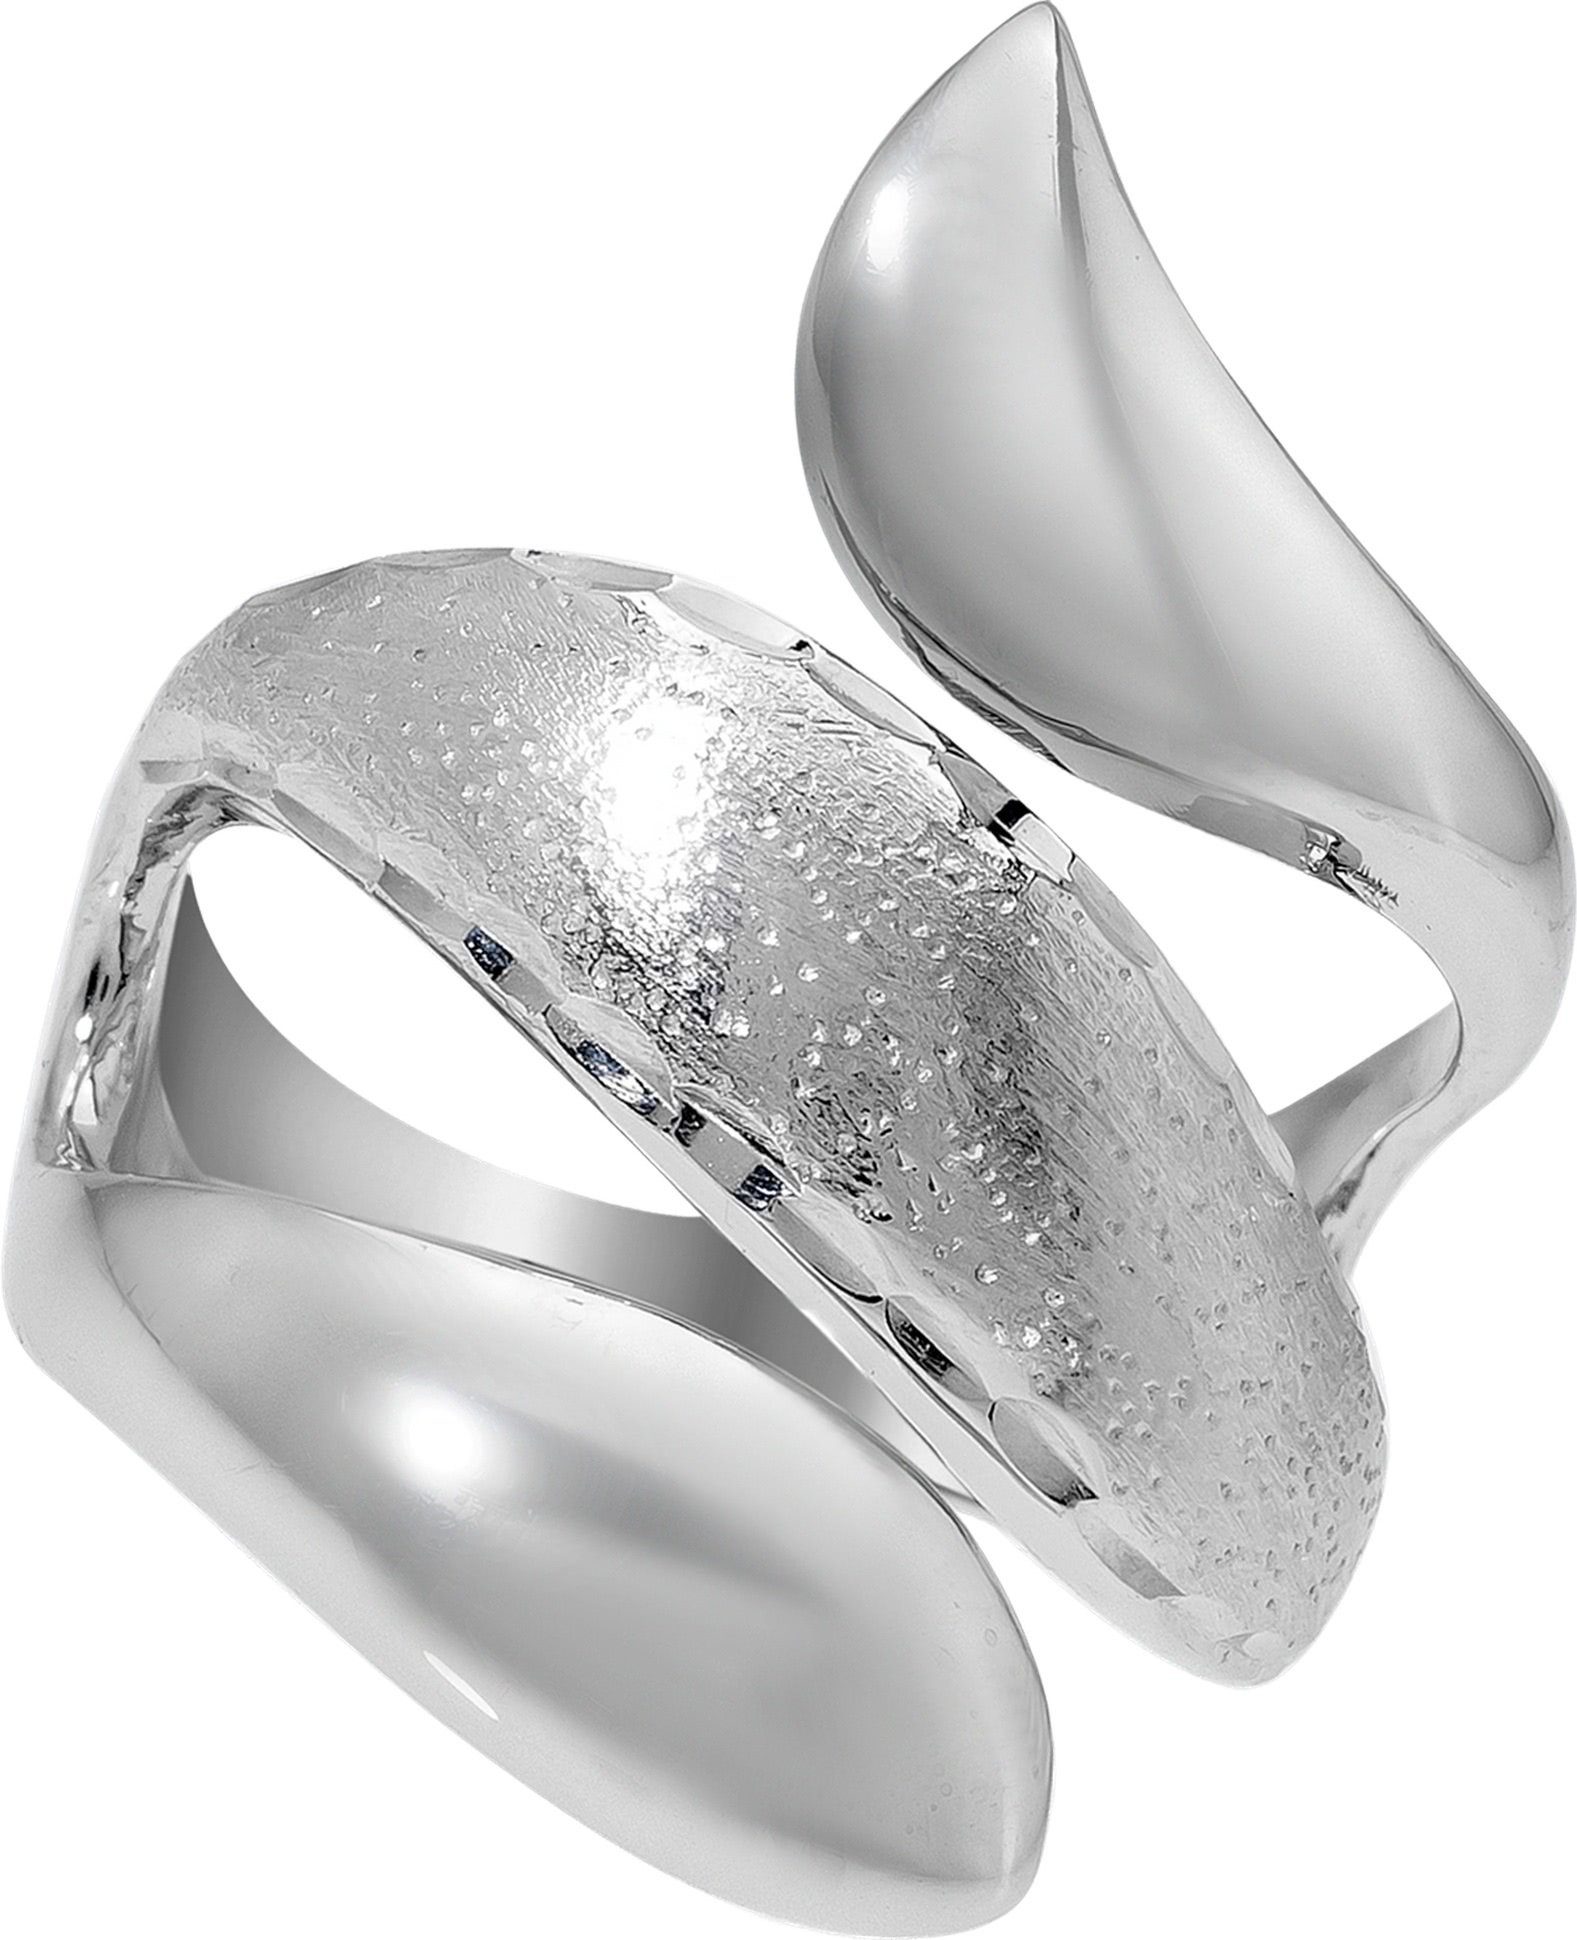 Balia Silberring Balia Ring für Damen mit diamantierter (Fingerring), Fingerring Größe 56 (17,8), 925 Sterling Silber (Schlange) Silber 925